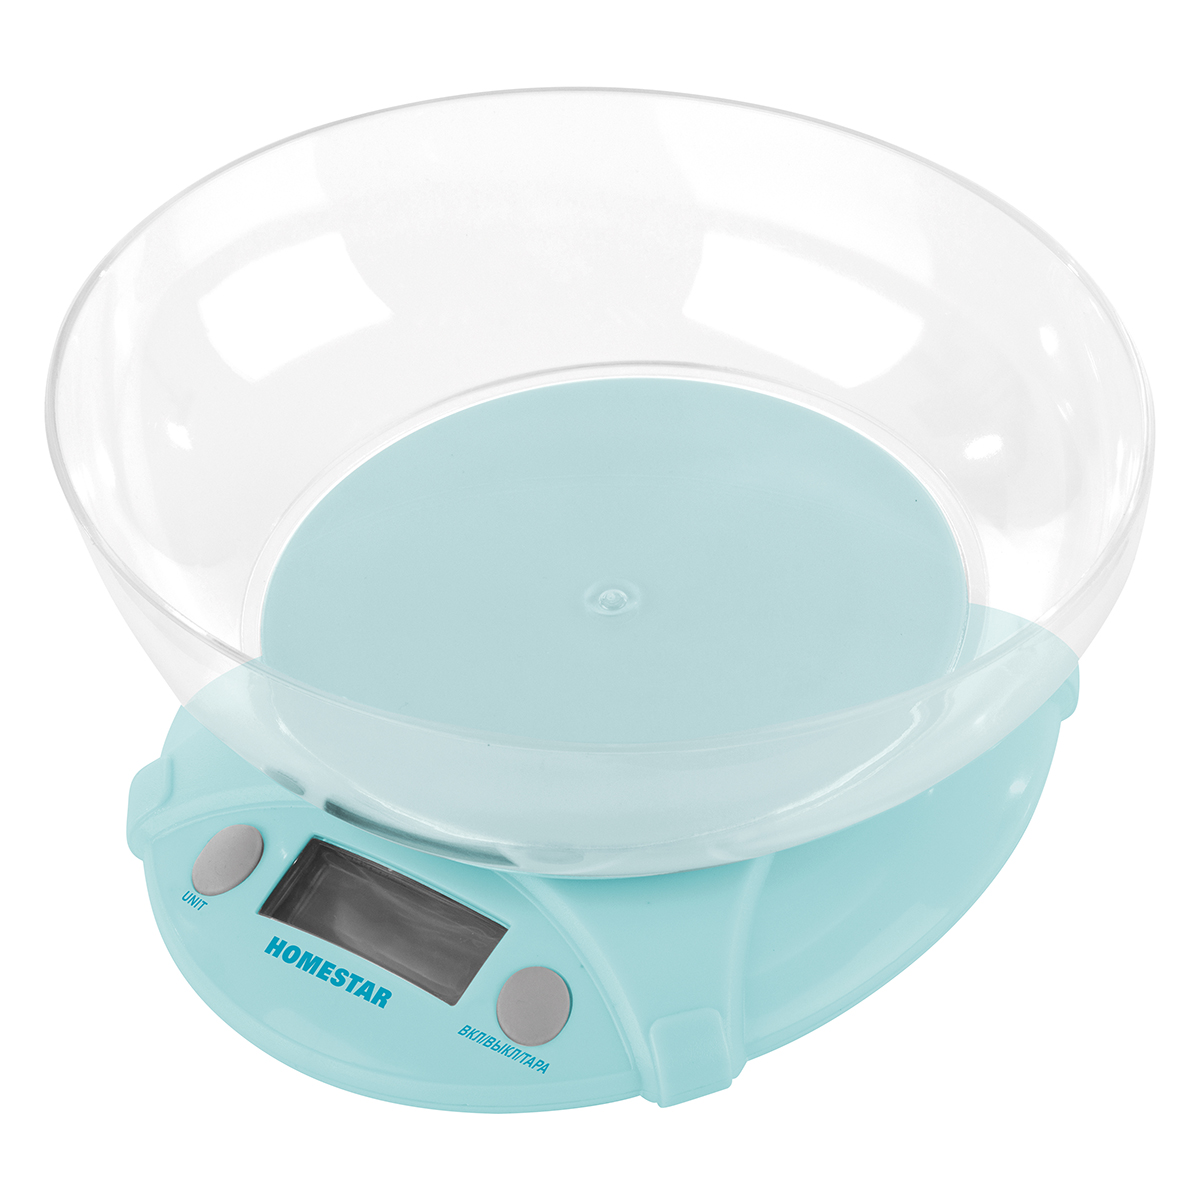 Весы кухонные электронные Homestar HS-3011 до 5 кг голубые чаша круглая - фото 2